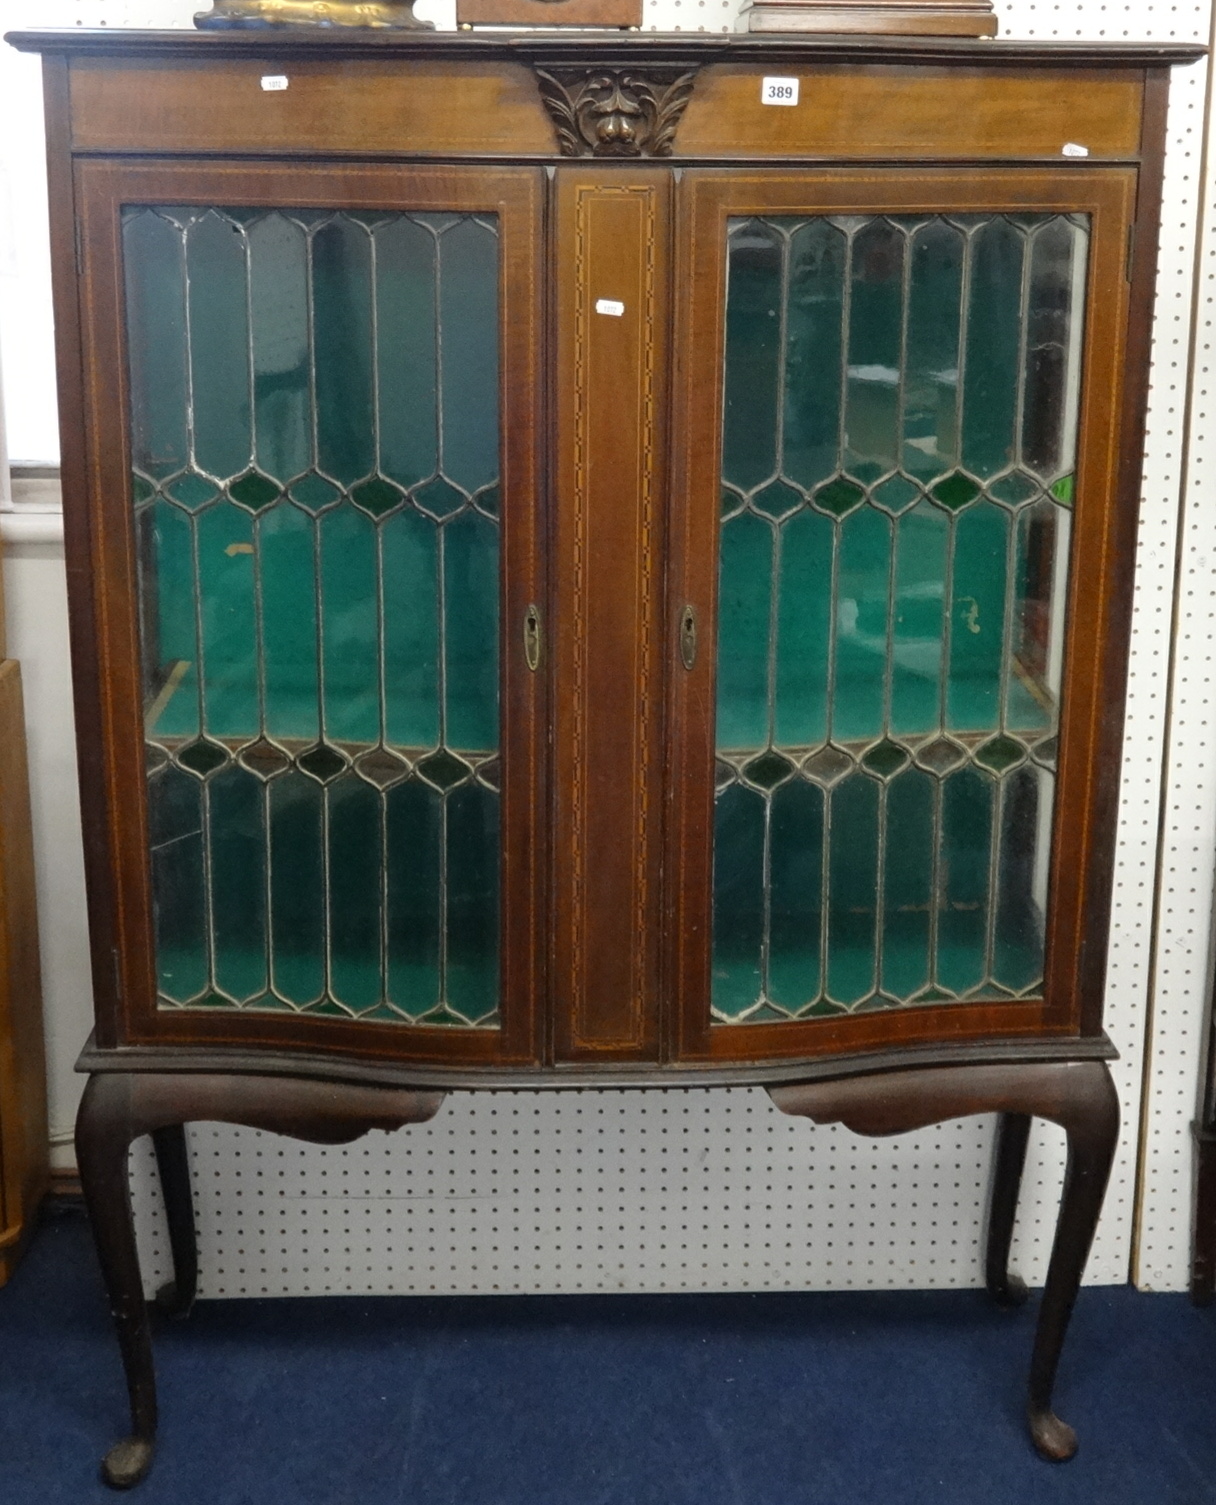 An Edwardian mahogany two door display cabinet